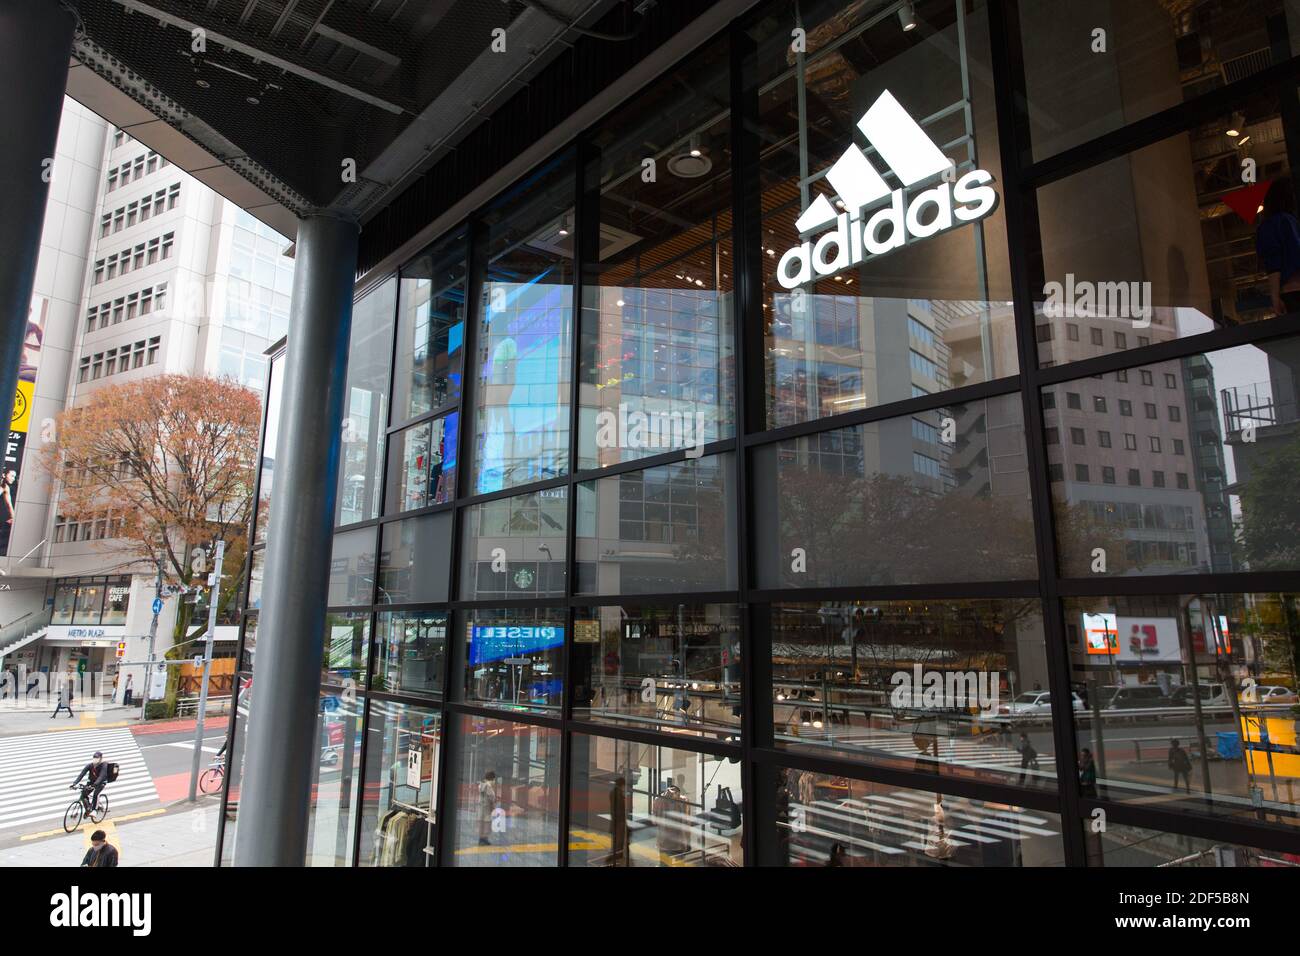 Adidas logo and store in Shibuya Stock Photo - Alamy